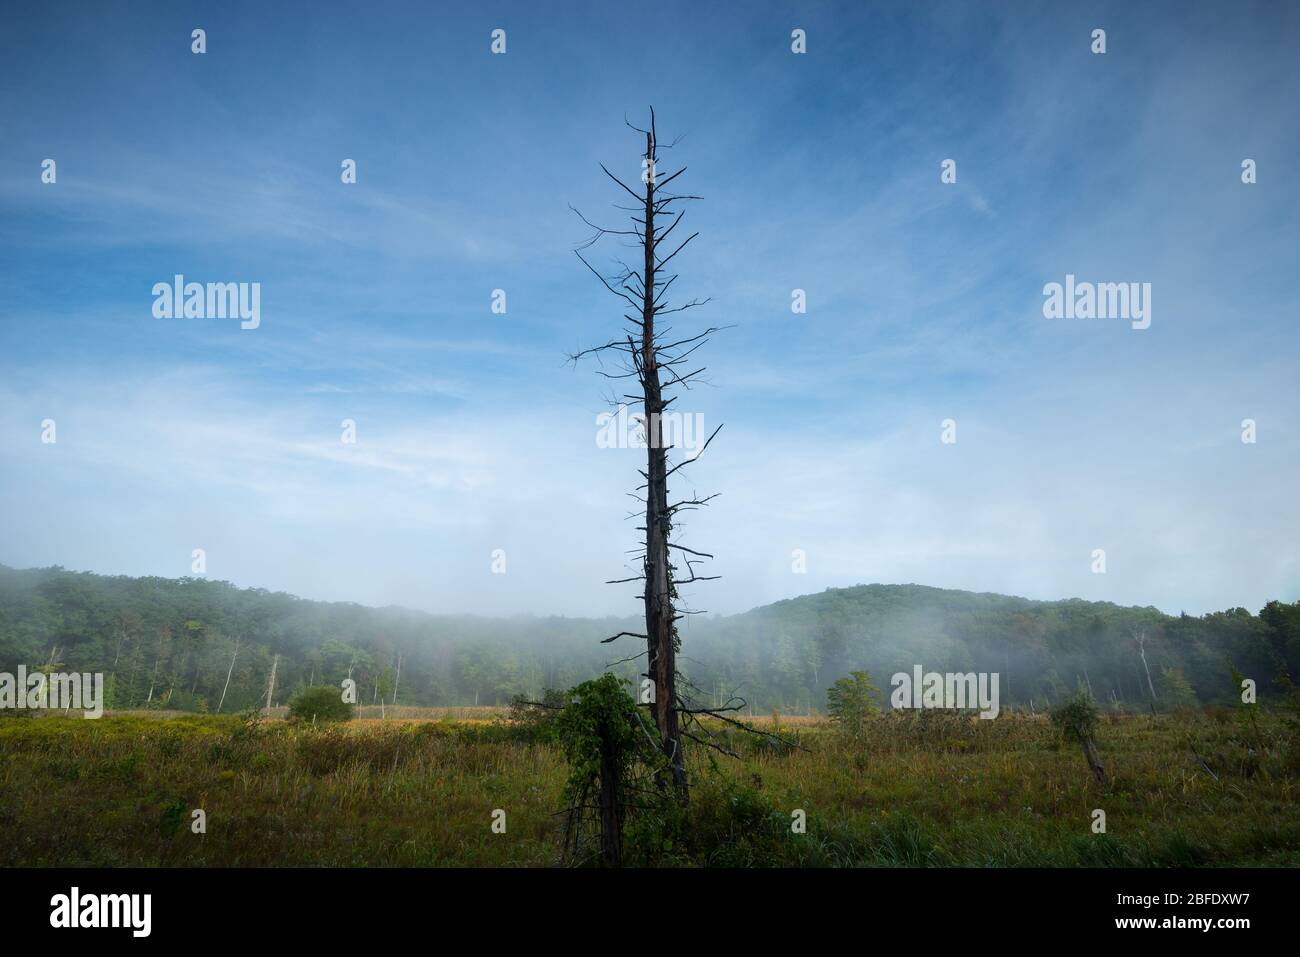 Un snag mort solitaire est élevé au milieu de zones humides chargées de brouillard dans la Great Mountain Forest du Connecticut (Norfolk, Connecticut). Banque D'Images